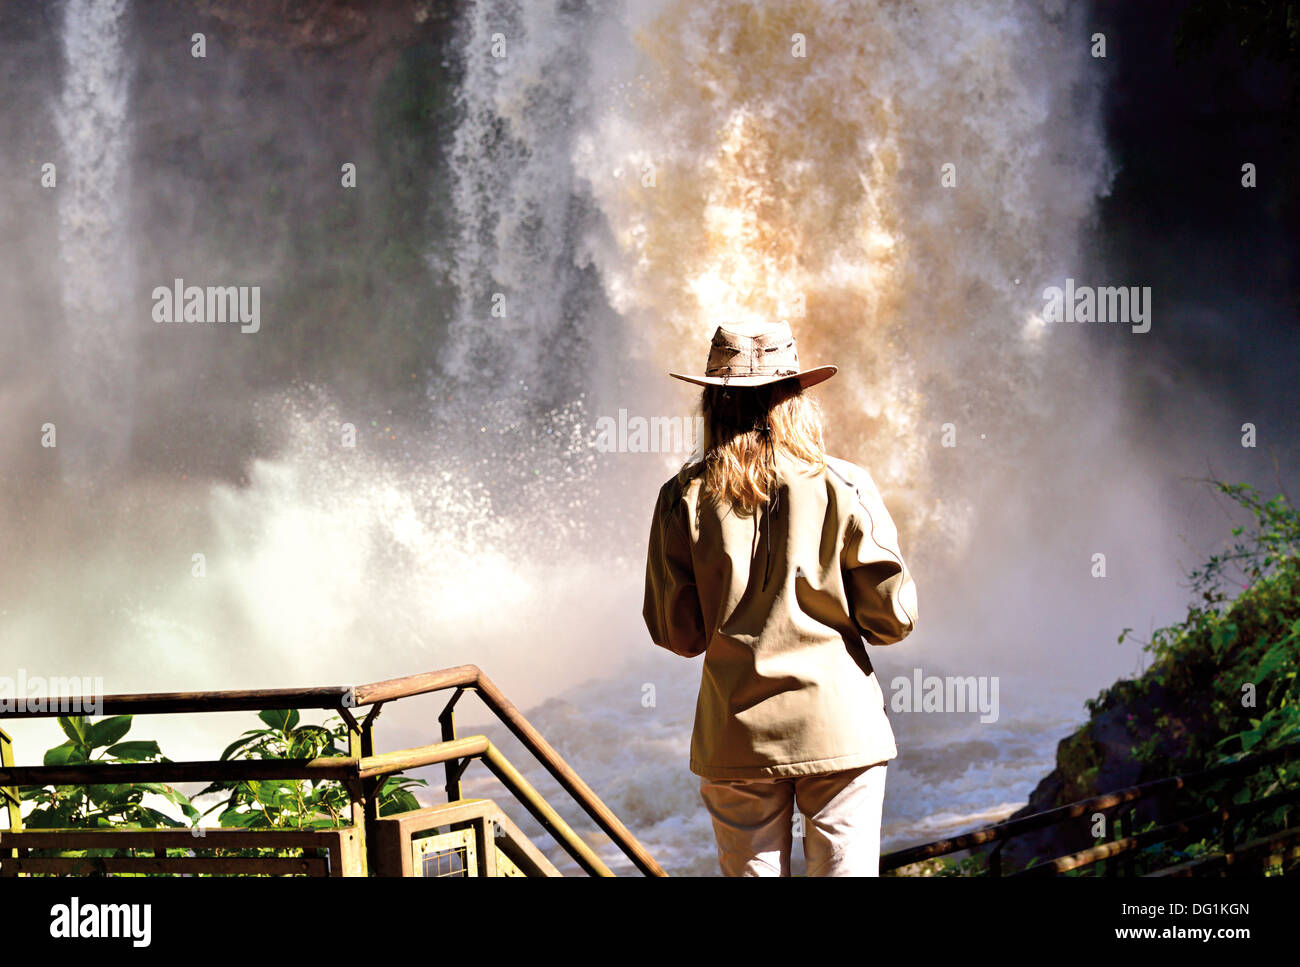 Argentinien, Iguazú Nationalpark: Weibliche Touristen auf der Suche nach der Iguassu Wasserfälle aus dem Superior-Kreislauf Kaskade Stockfoto